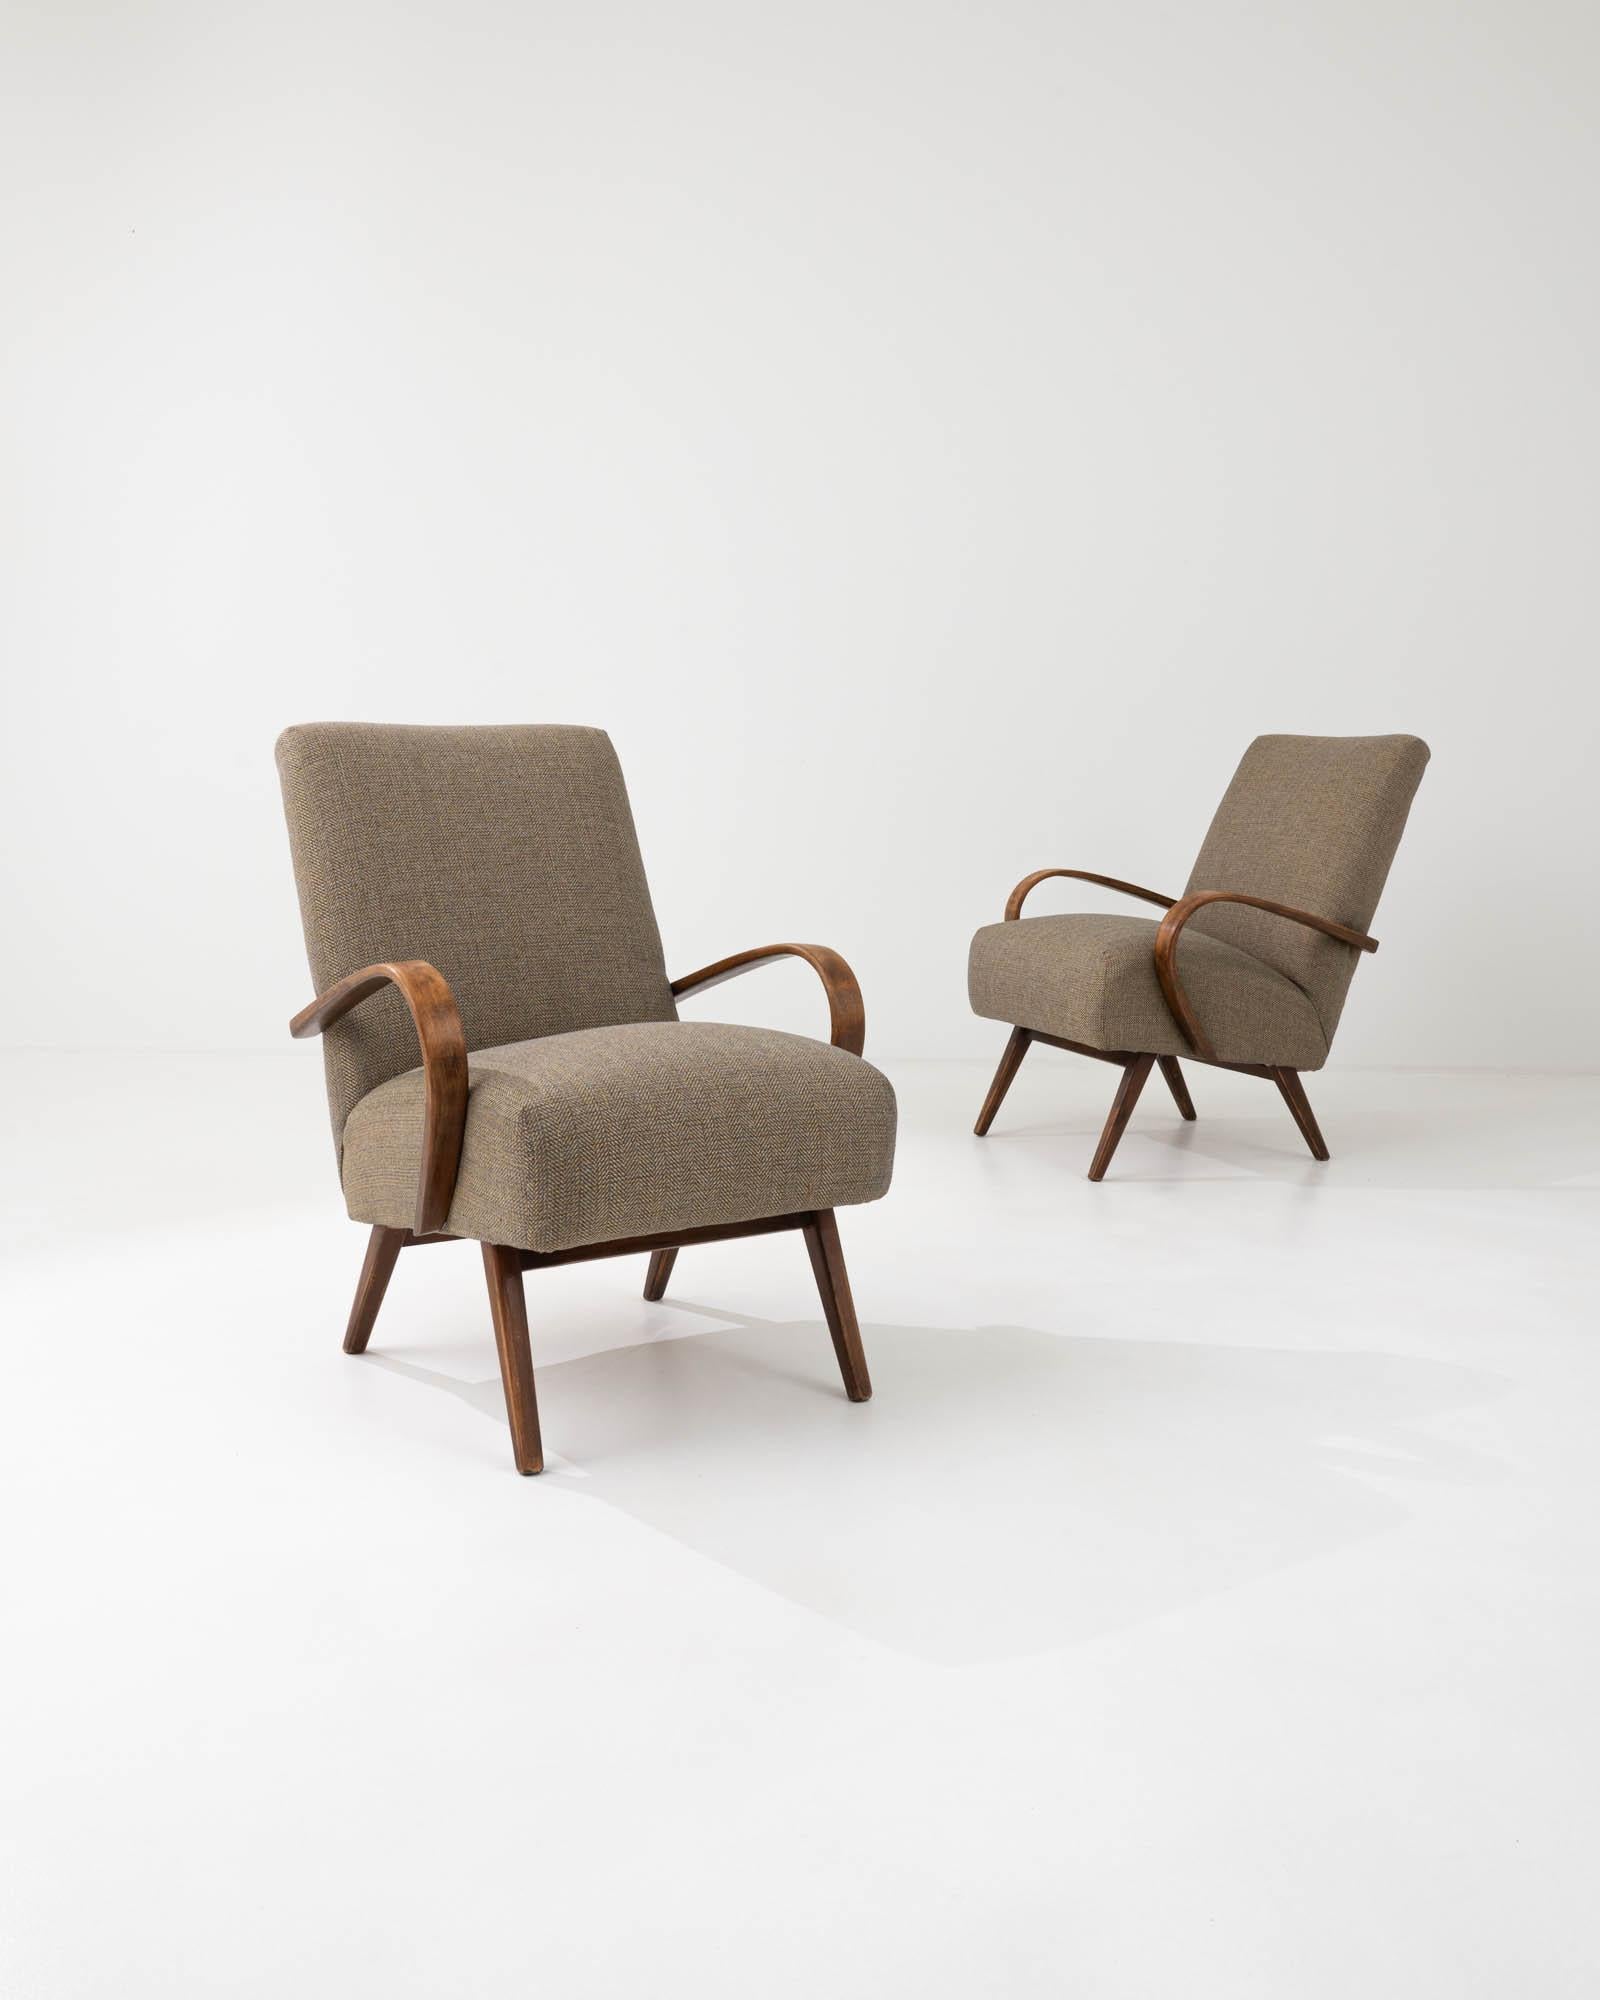 Fabriquée dans l'ancienne Tchécoslovaquie, cette paire de fauteuils en bois courbé datant d'environ 1950 a été retapissée avec un tissu neutre actualisé. Le mélange de coton et de lin a été choisi pour compléter l'élégance vintage du cadre en bois